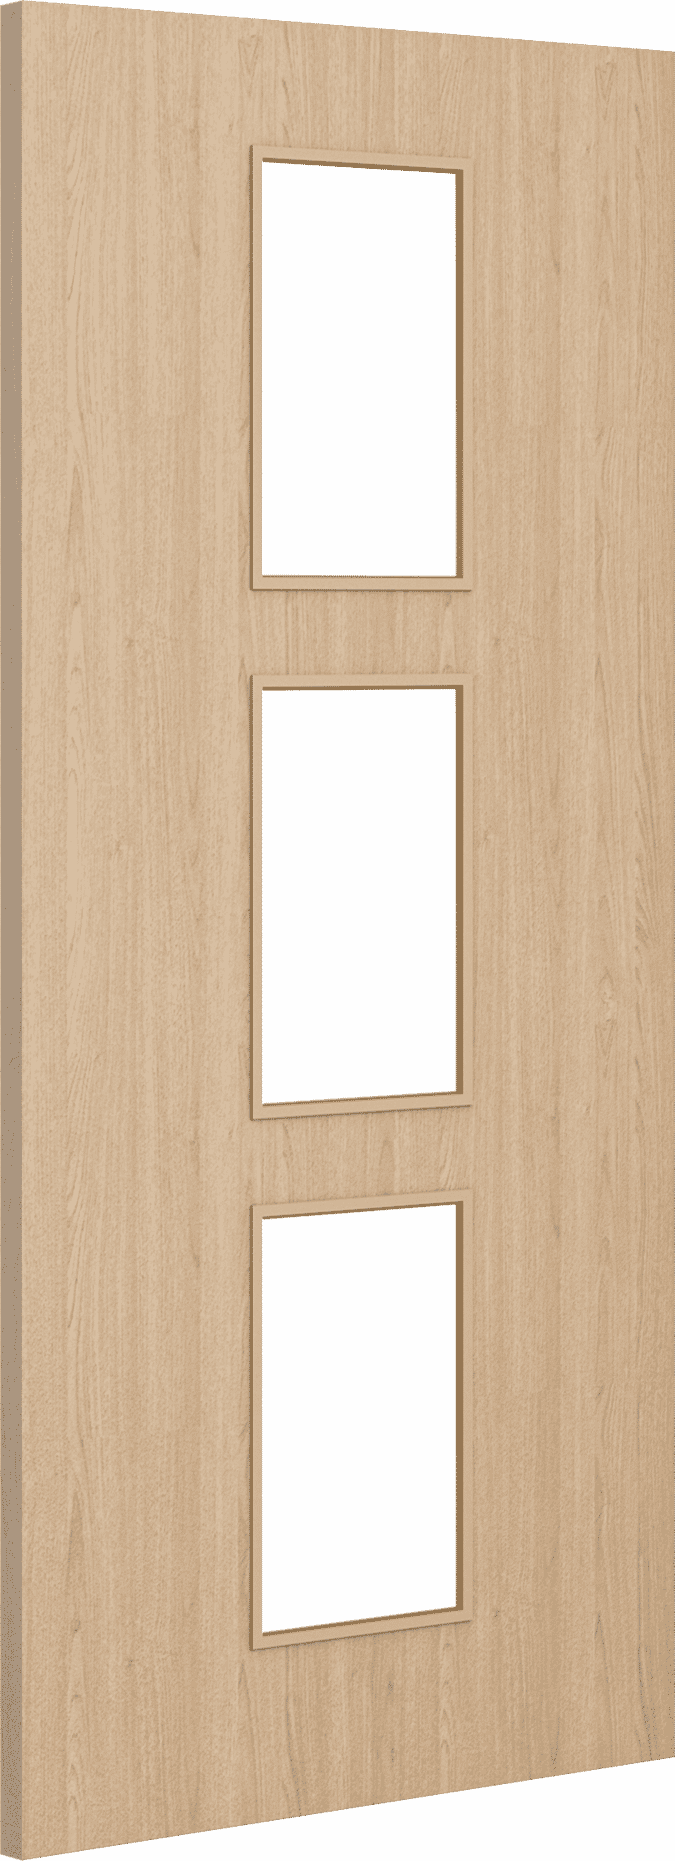 1981mm x 610mm x 44mm (24") Architectural Oak 11 Clear Glazed - Prefinished FD30 Fire Door Blank